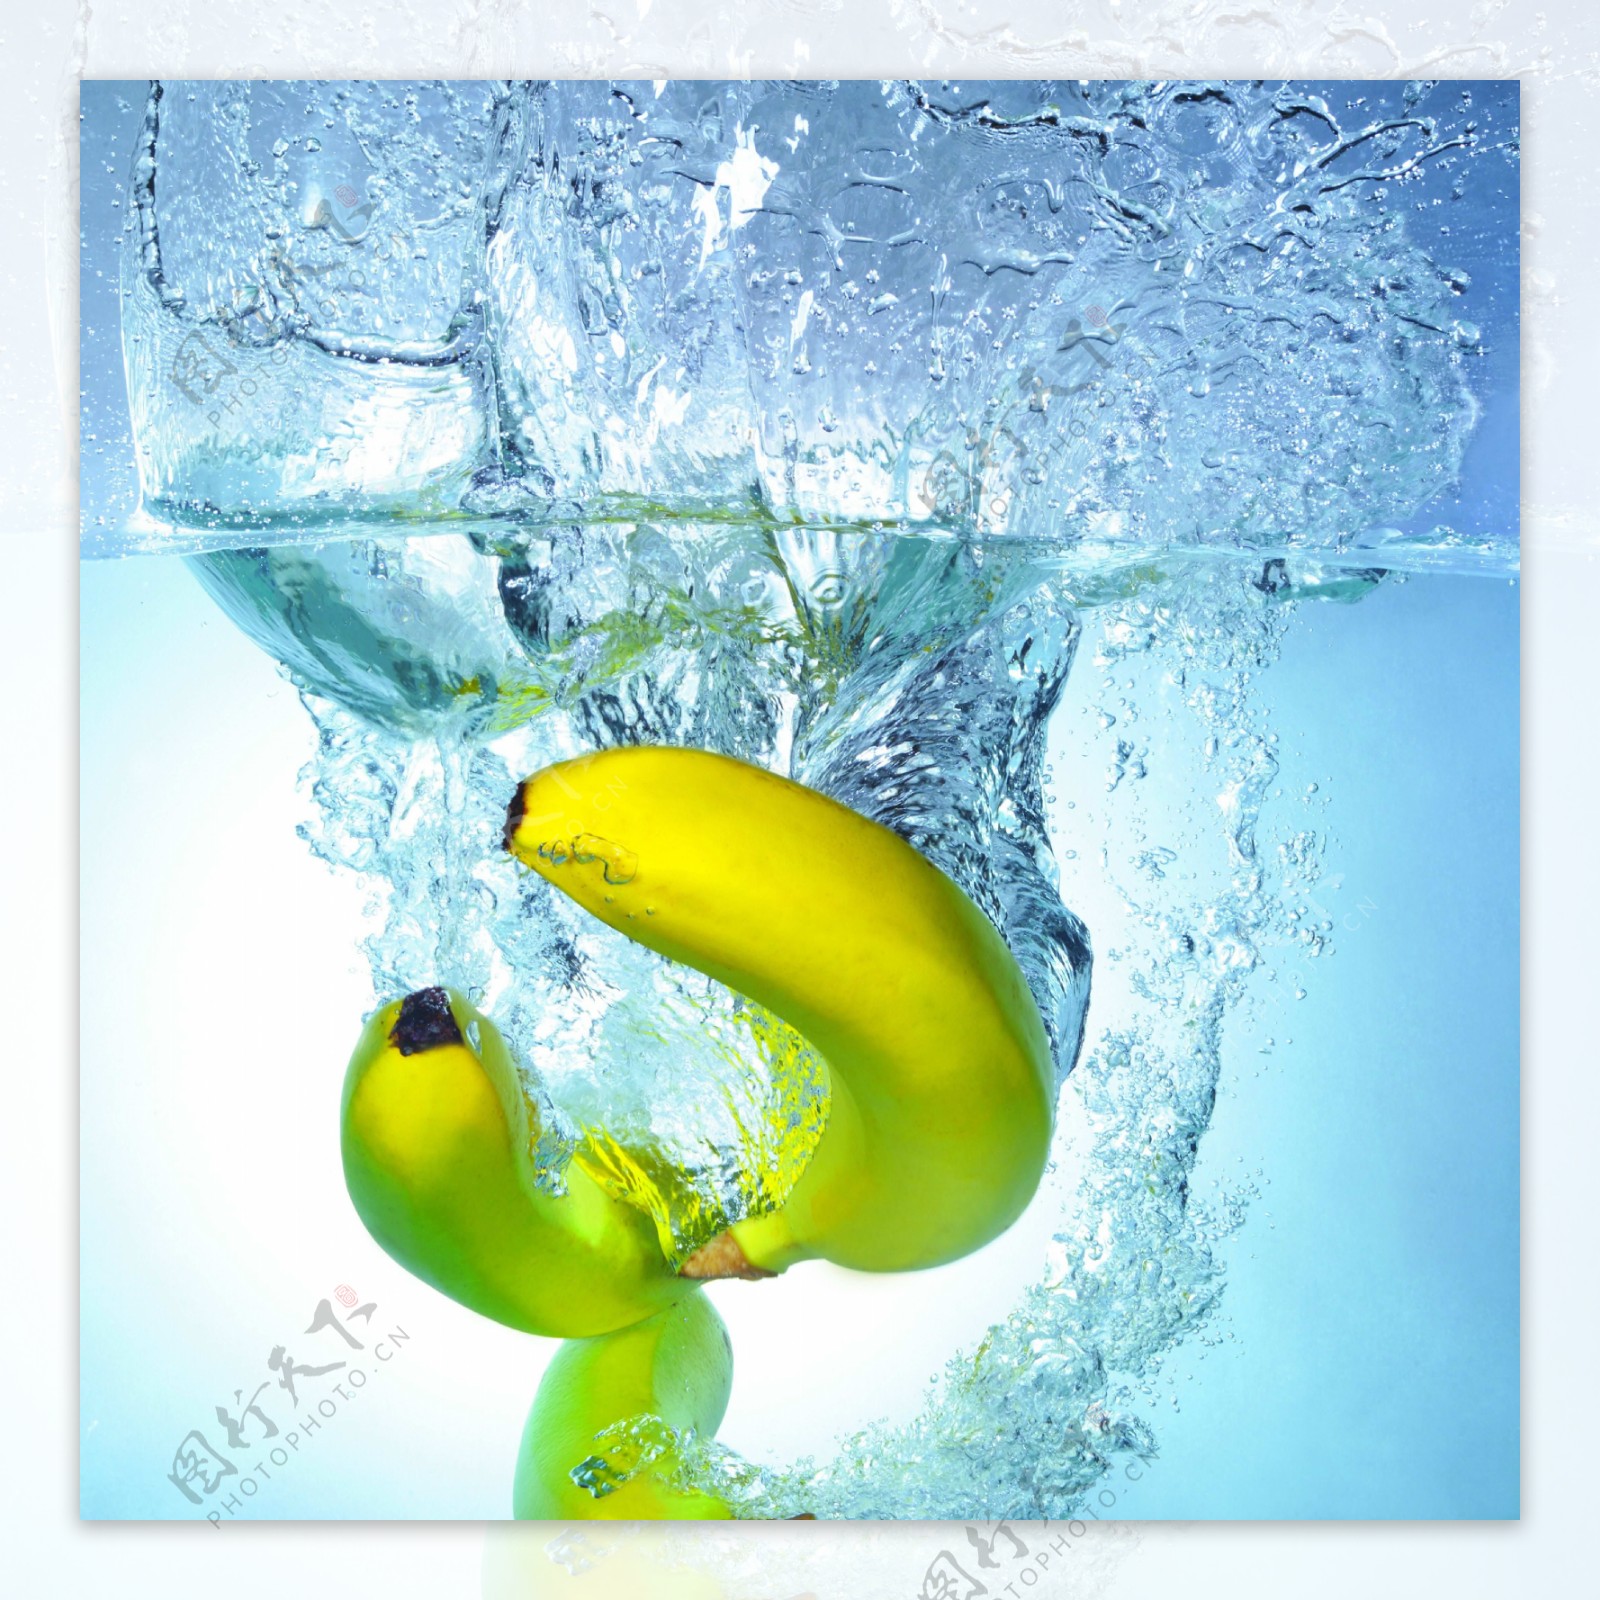 水泡动感水果蔬果水果美图香蕉